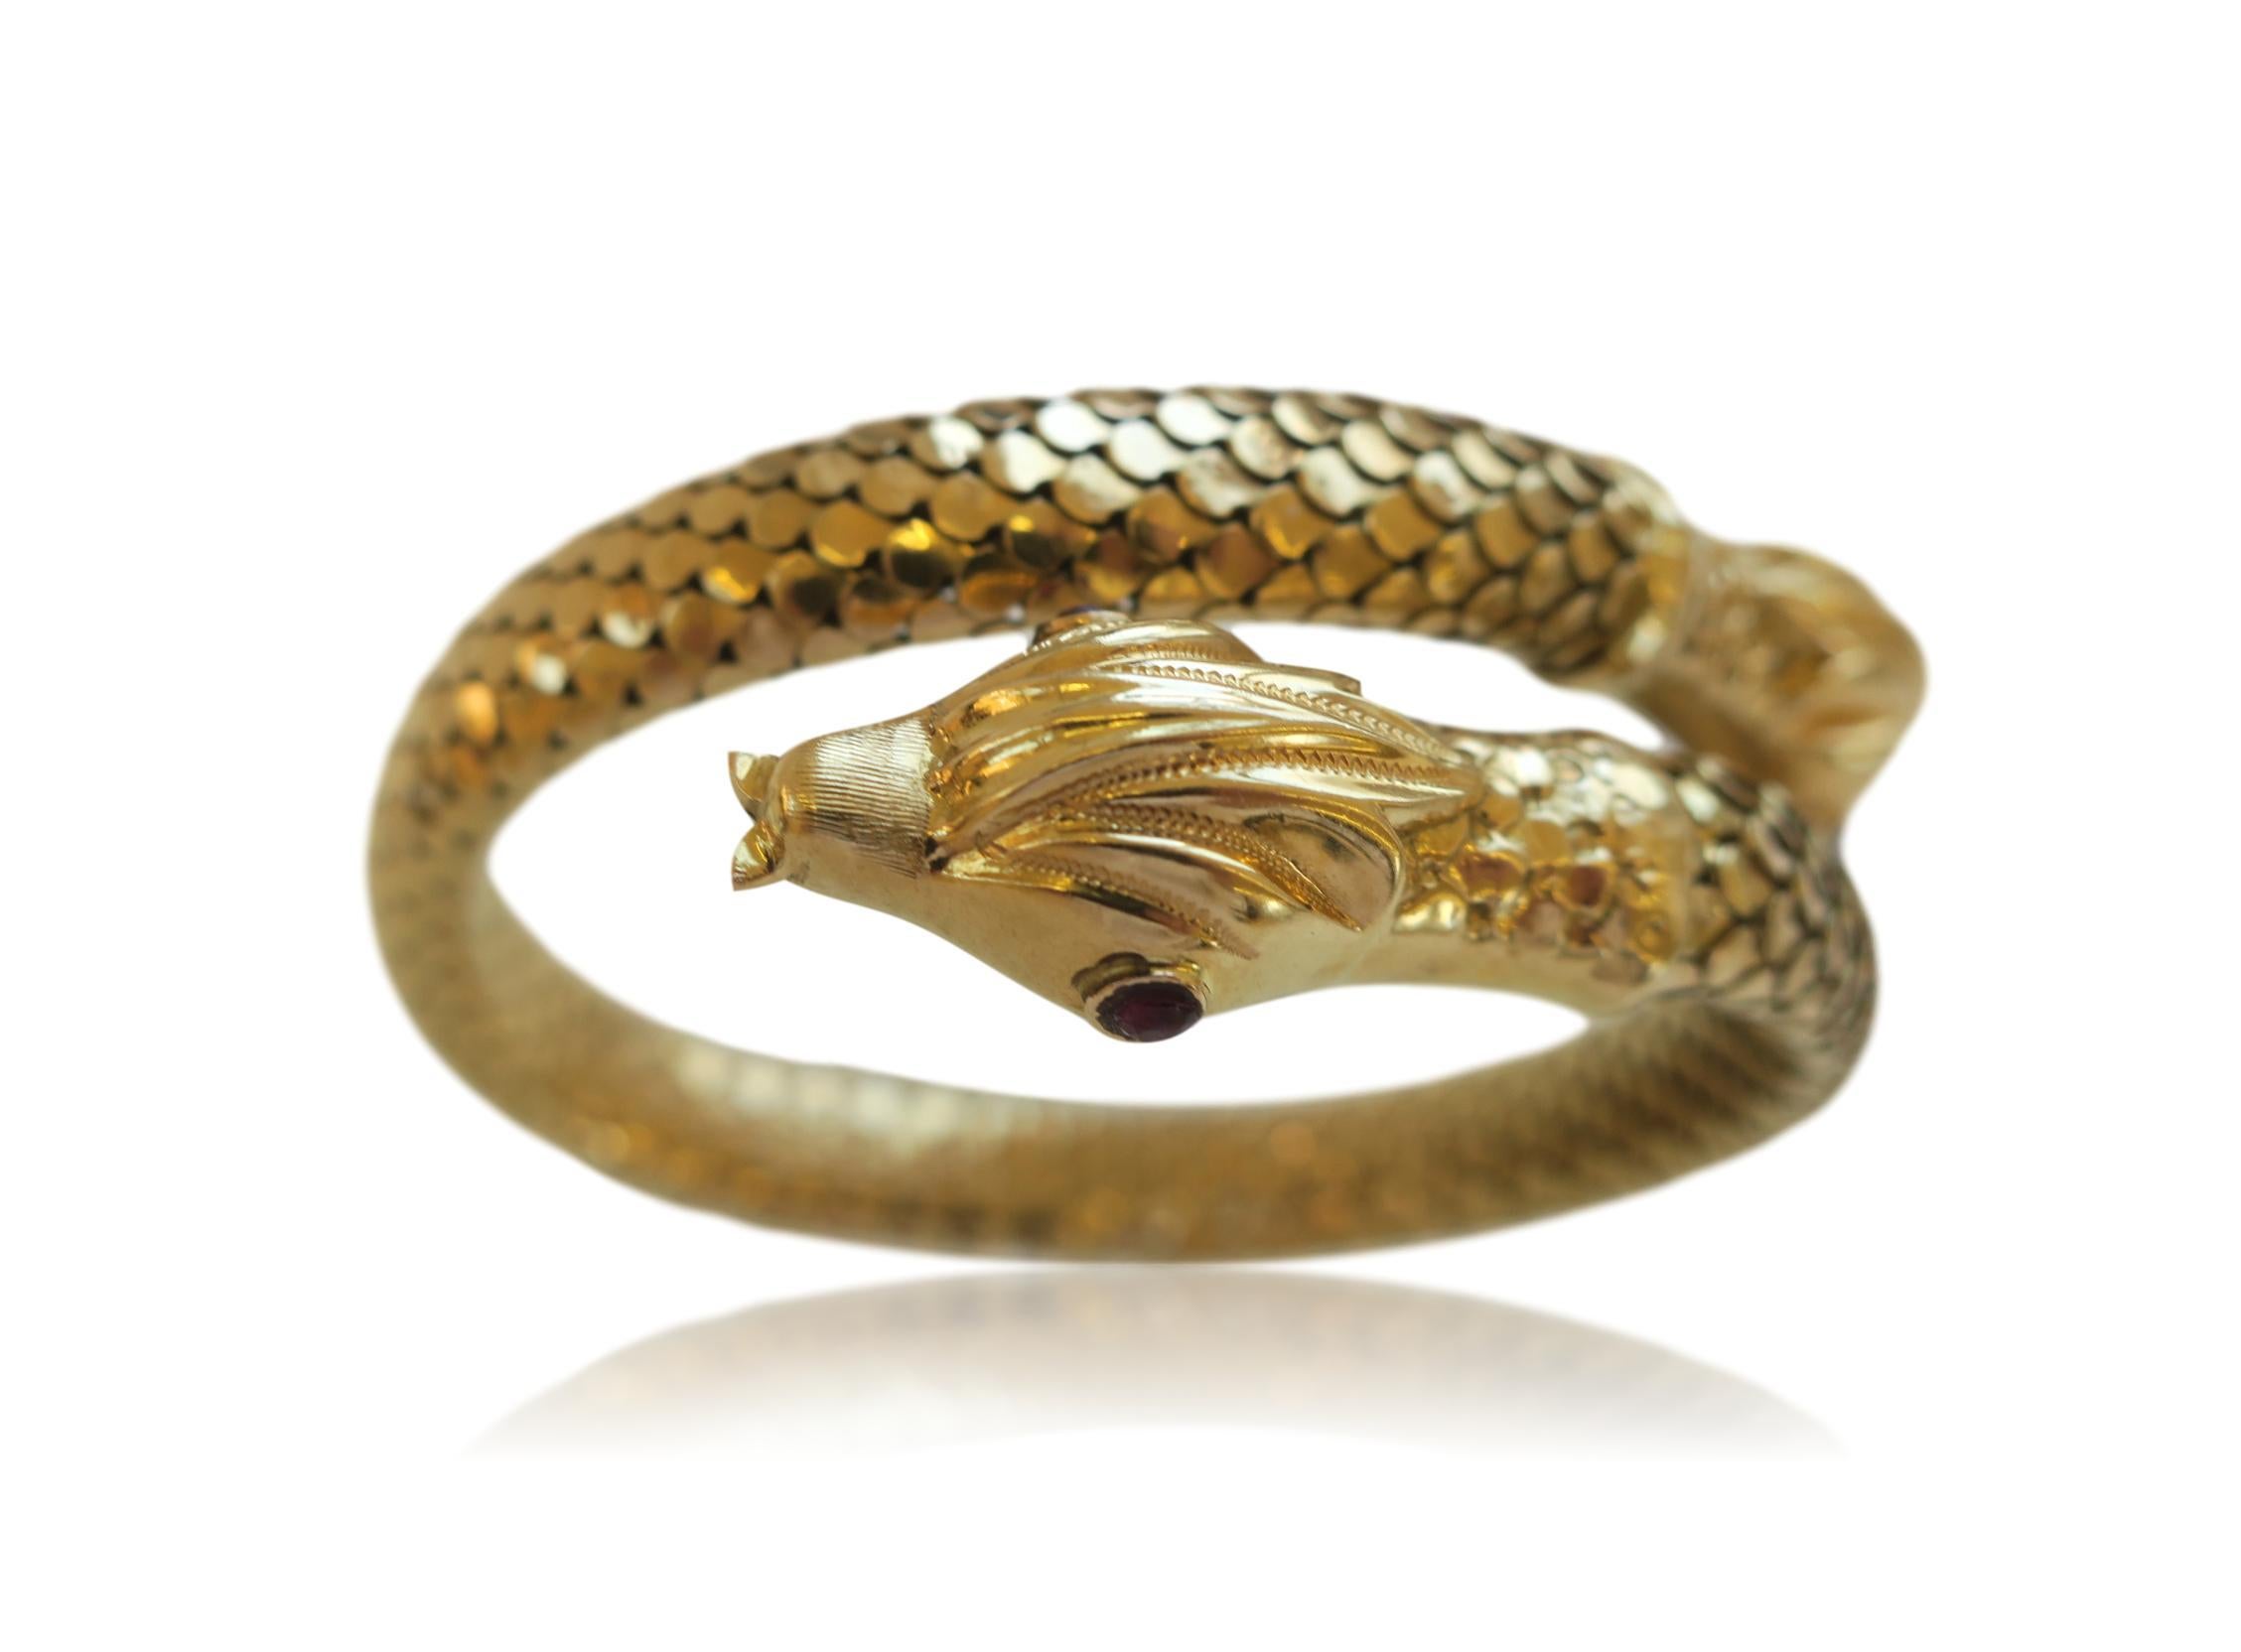 Italian 18k Gold Snake Bracelet. The 3/8